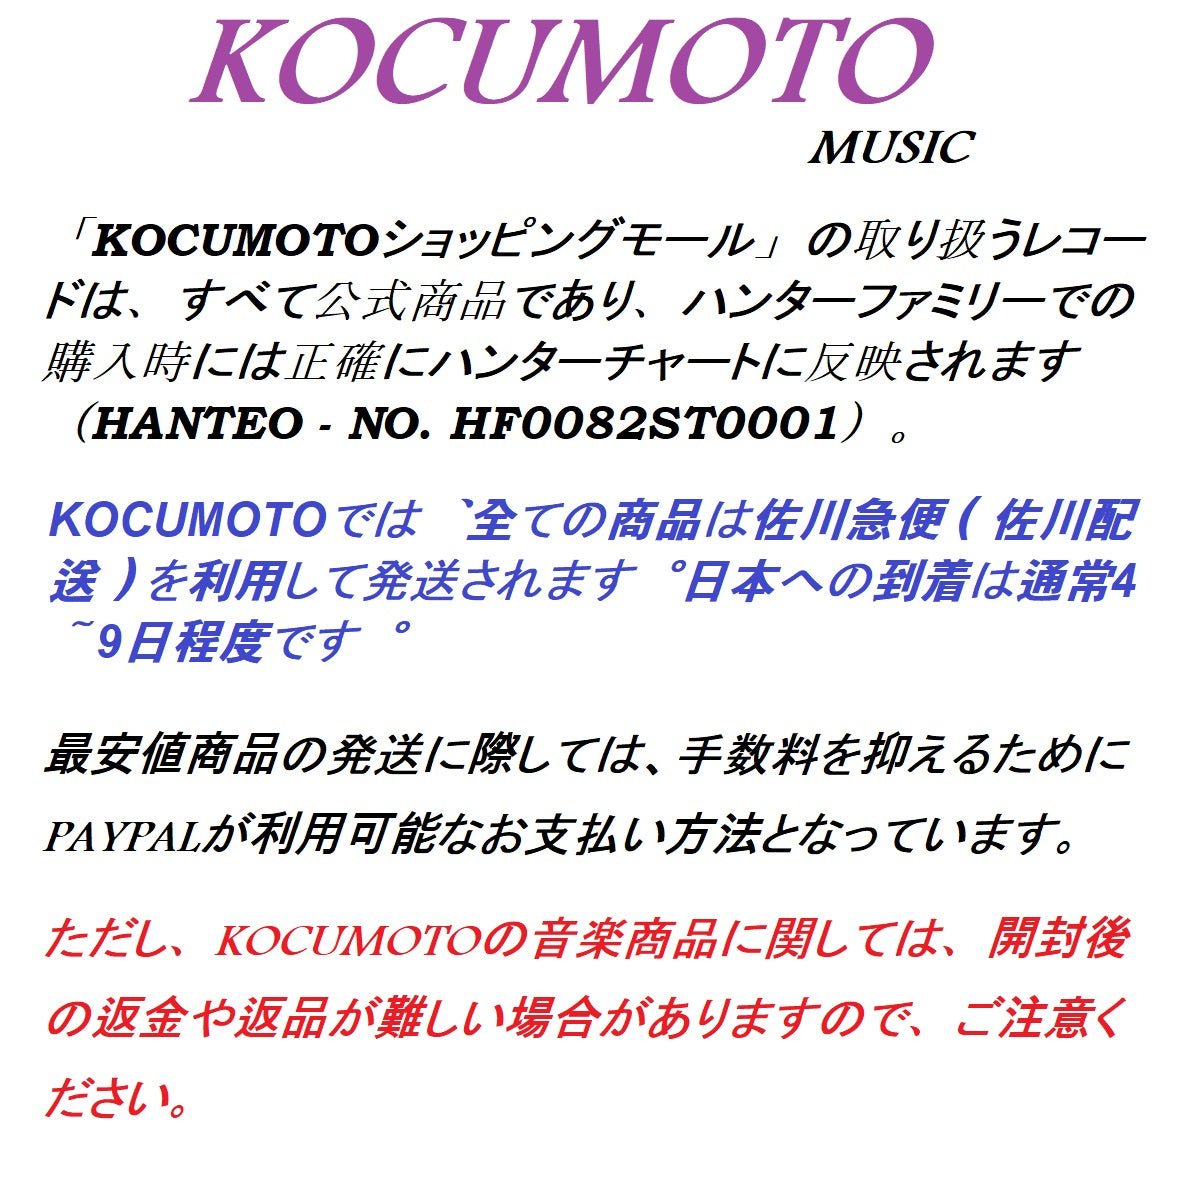 [n.SSign] (エンサイン) - DEBUT ALBUM : BIRTH OF COSMO (Nemo Album Full Ver.) (限定盤) - コクモト KOCUMOTO